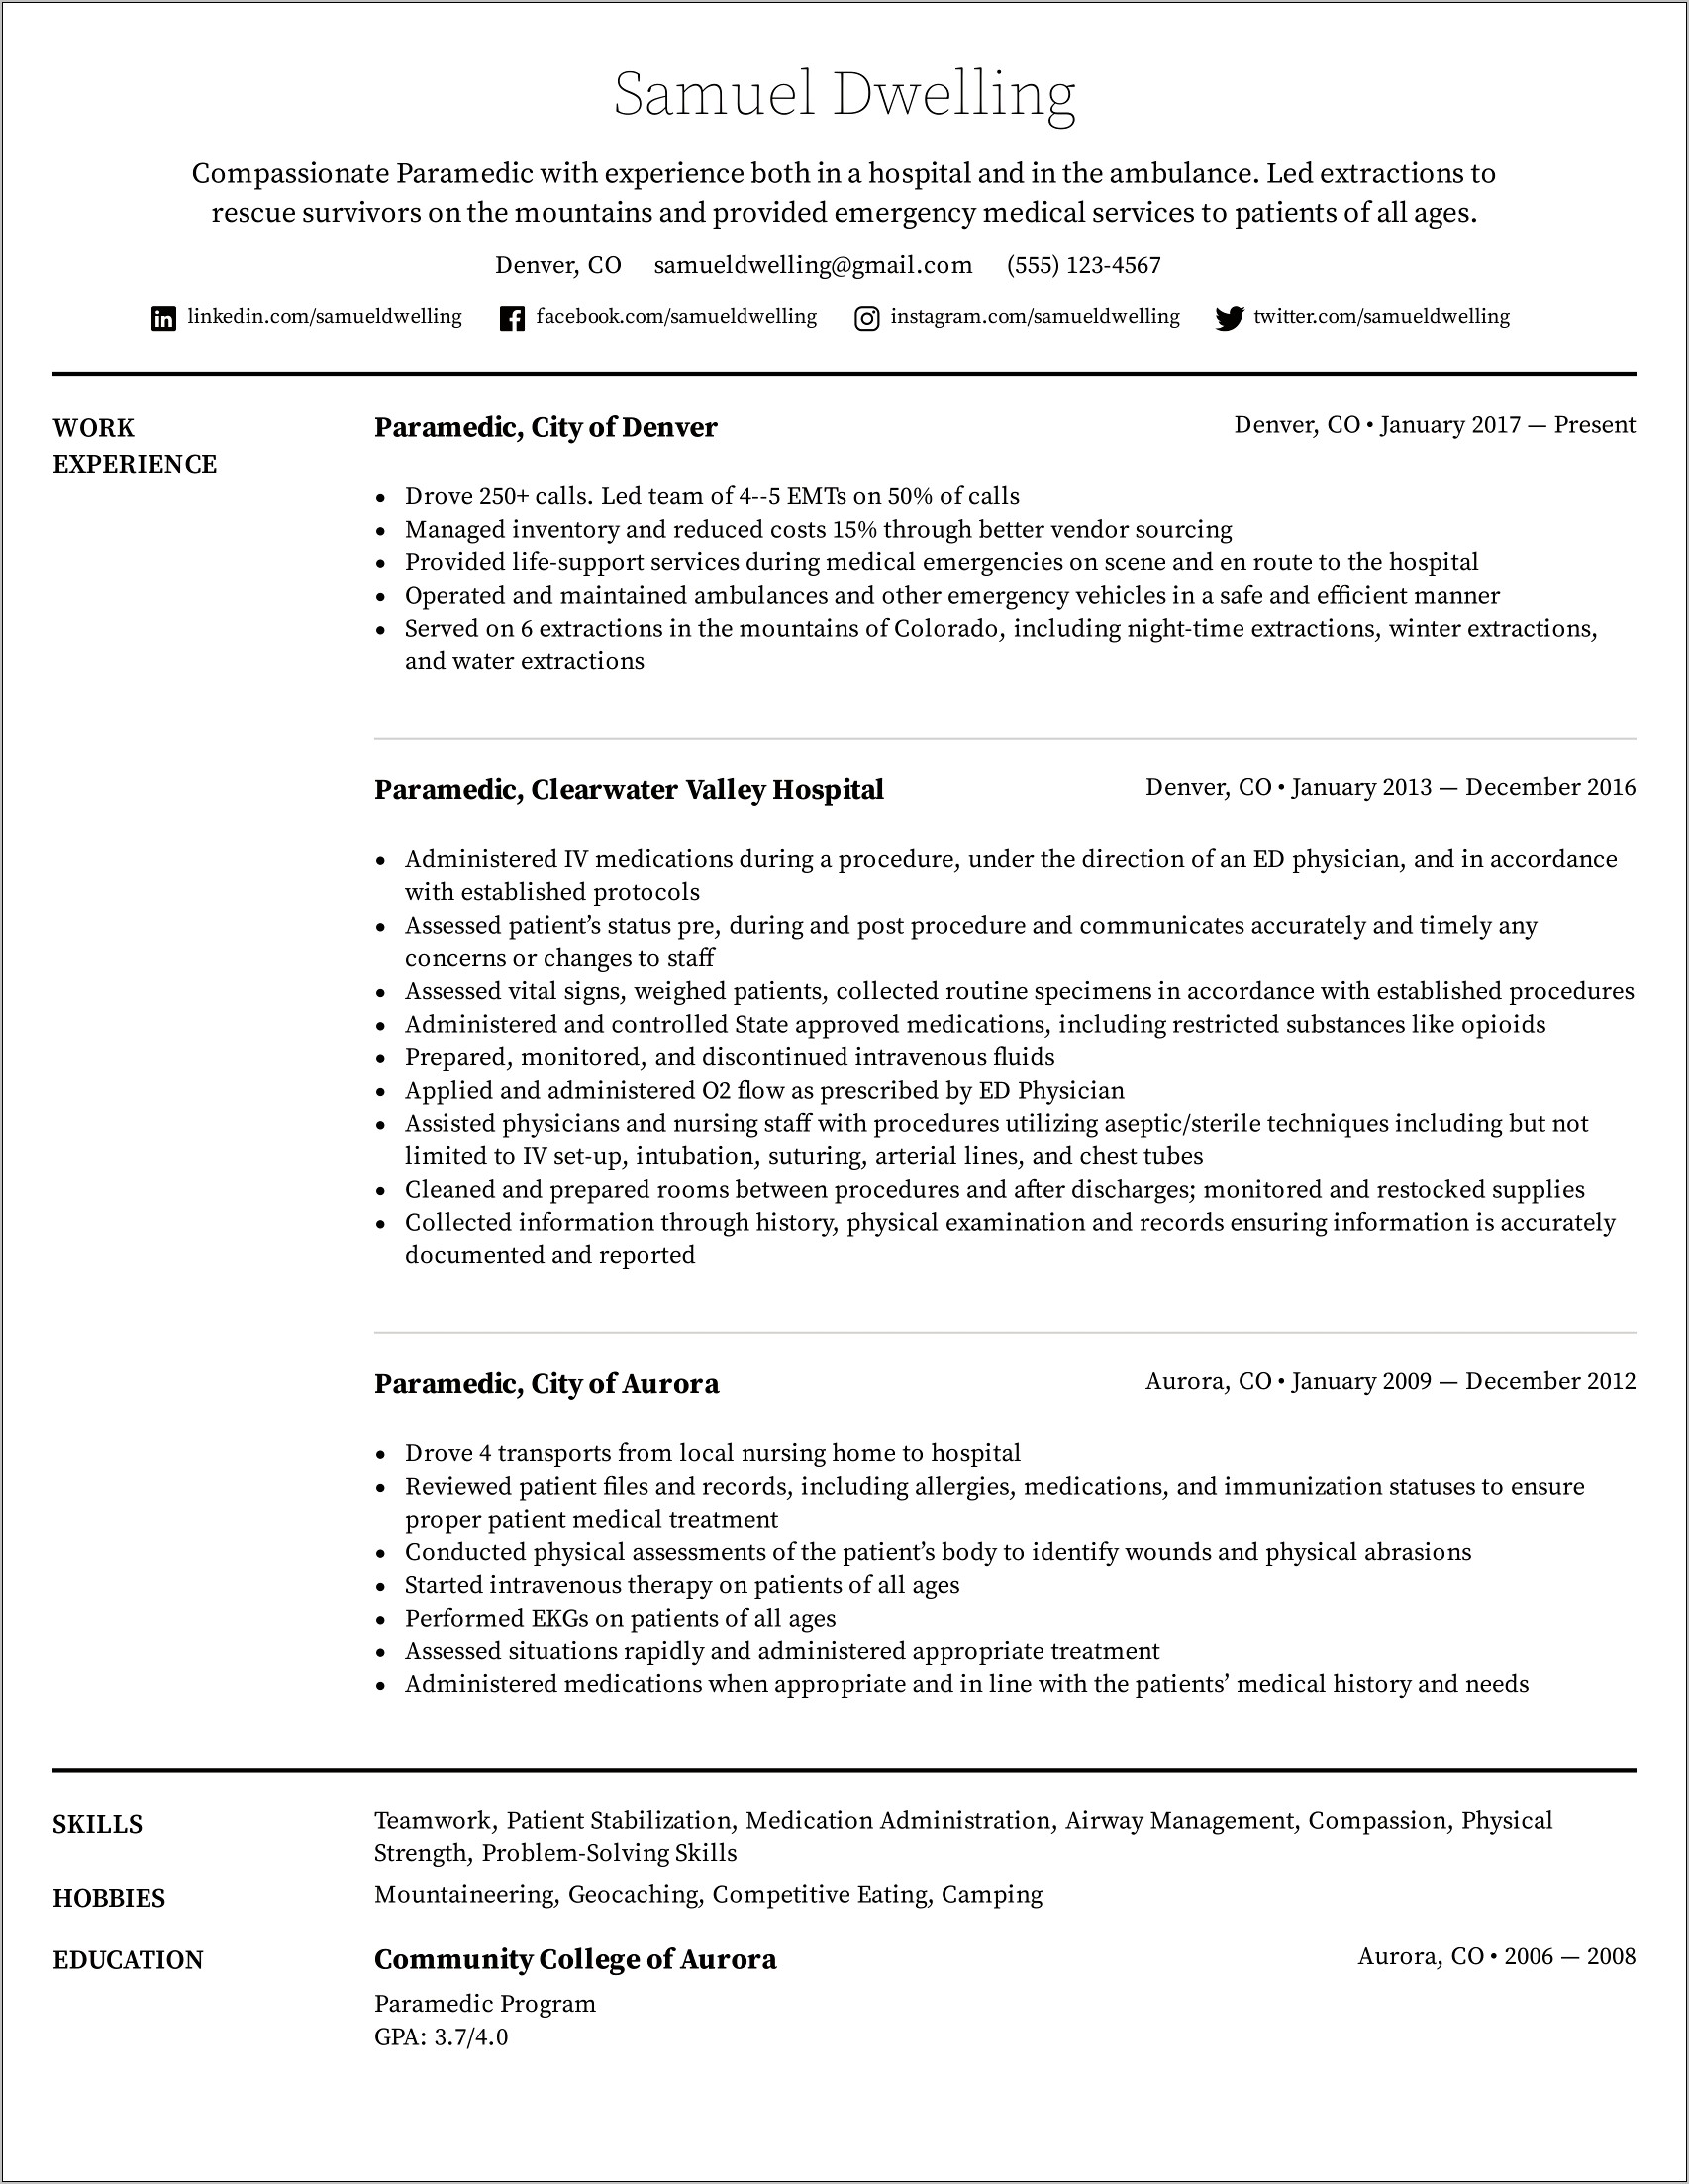 Patient Transport Assistant Job Description Resume